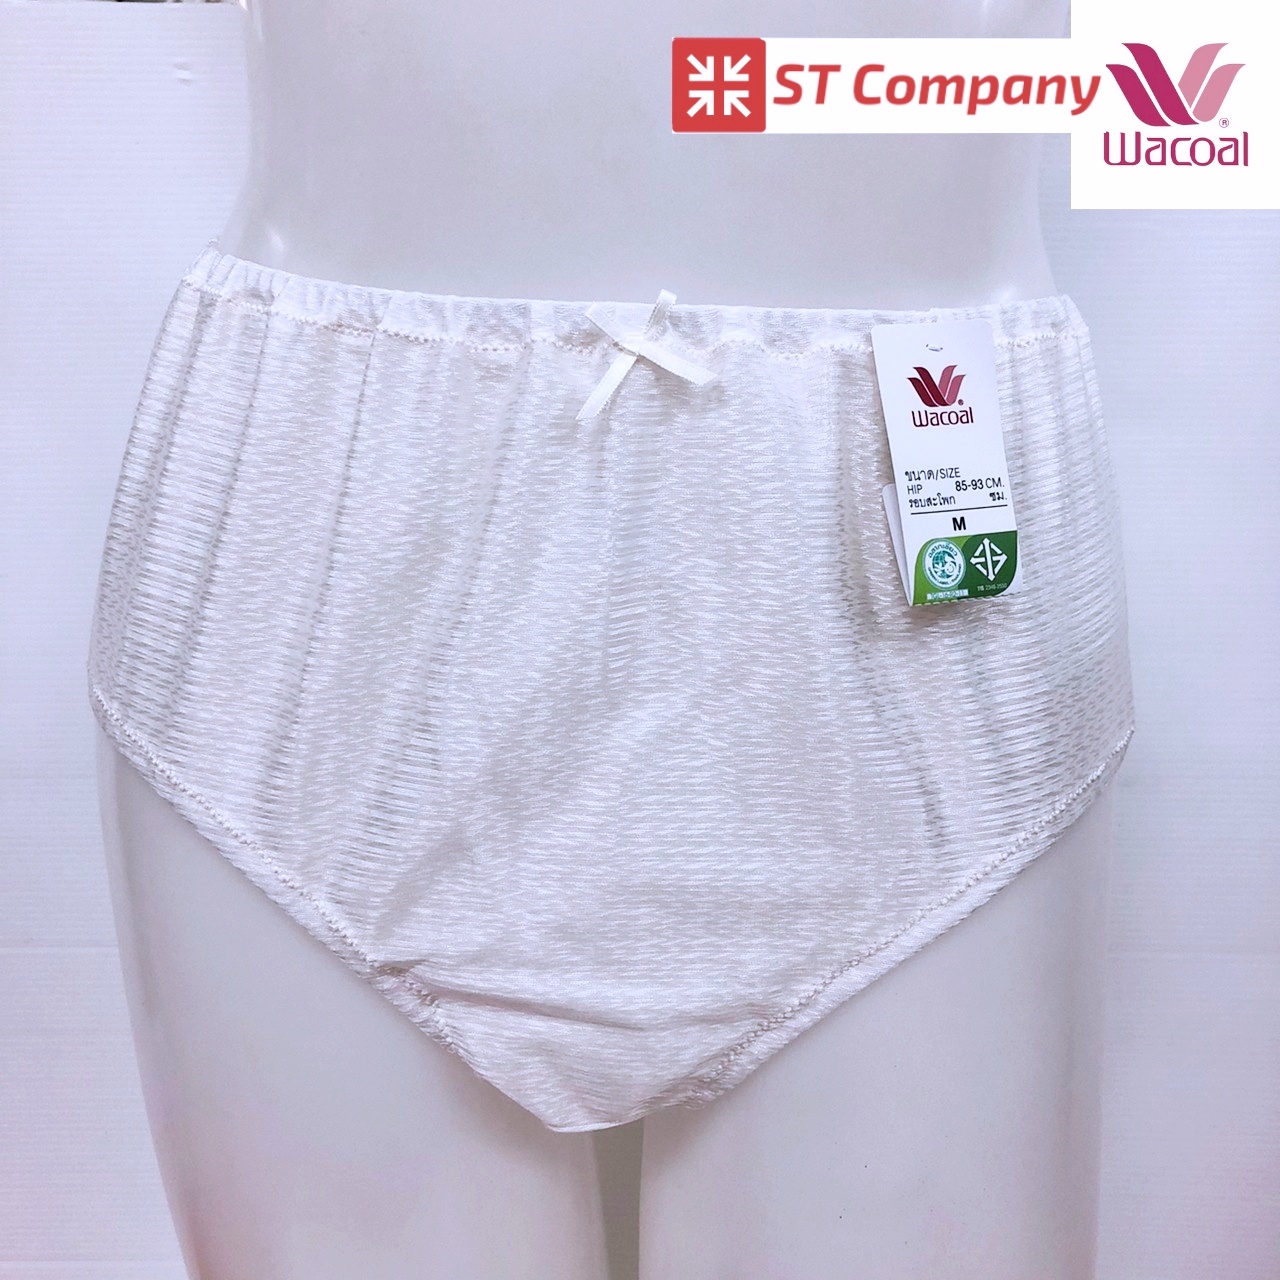 กางเกงในร้อยยาง Wacoal แบบเต็มตัว สีน้ำตาล (OT) รุ่น WU4948 1 ตัว เนื้อผ้าเงางาม ผิวสัมผัสเนียนนุ่ม ใส่สบายซักง่าย แห้งเร็ว วาโก้ ร้อยยาง กางเก